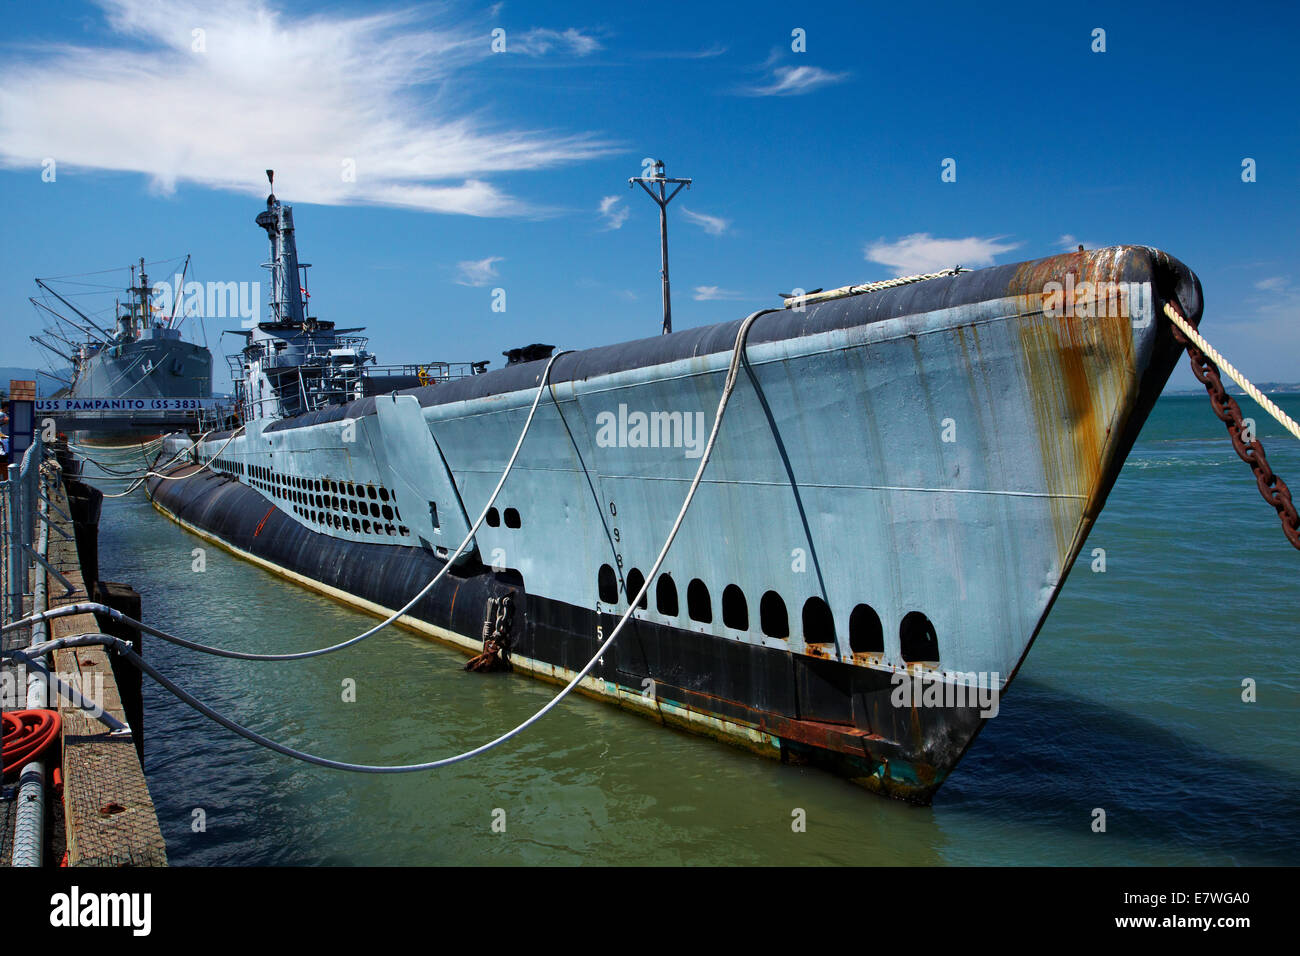 USS Pampanito (SS383), historische WWII u-Boot Gedenkstätte und Museum, Pier 45, Fishermans Wharf, San Francisco, Kalifornien, USA Stockfoto